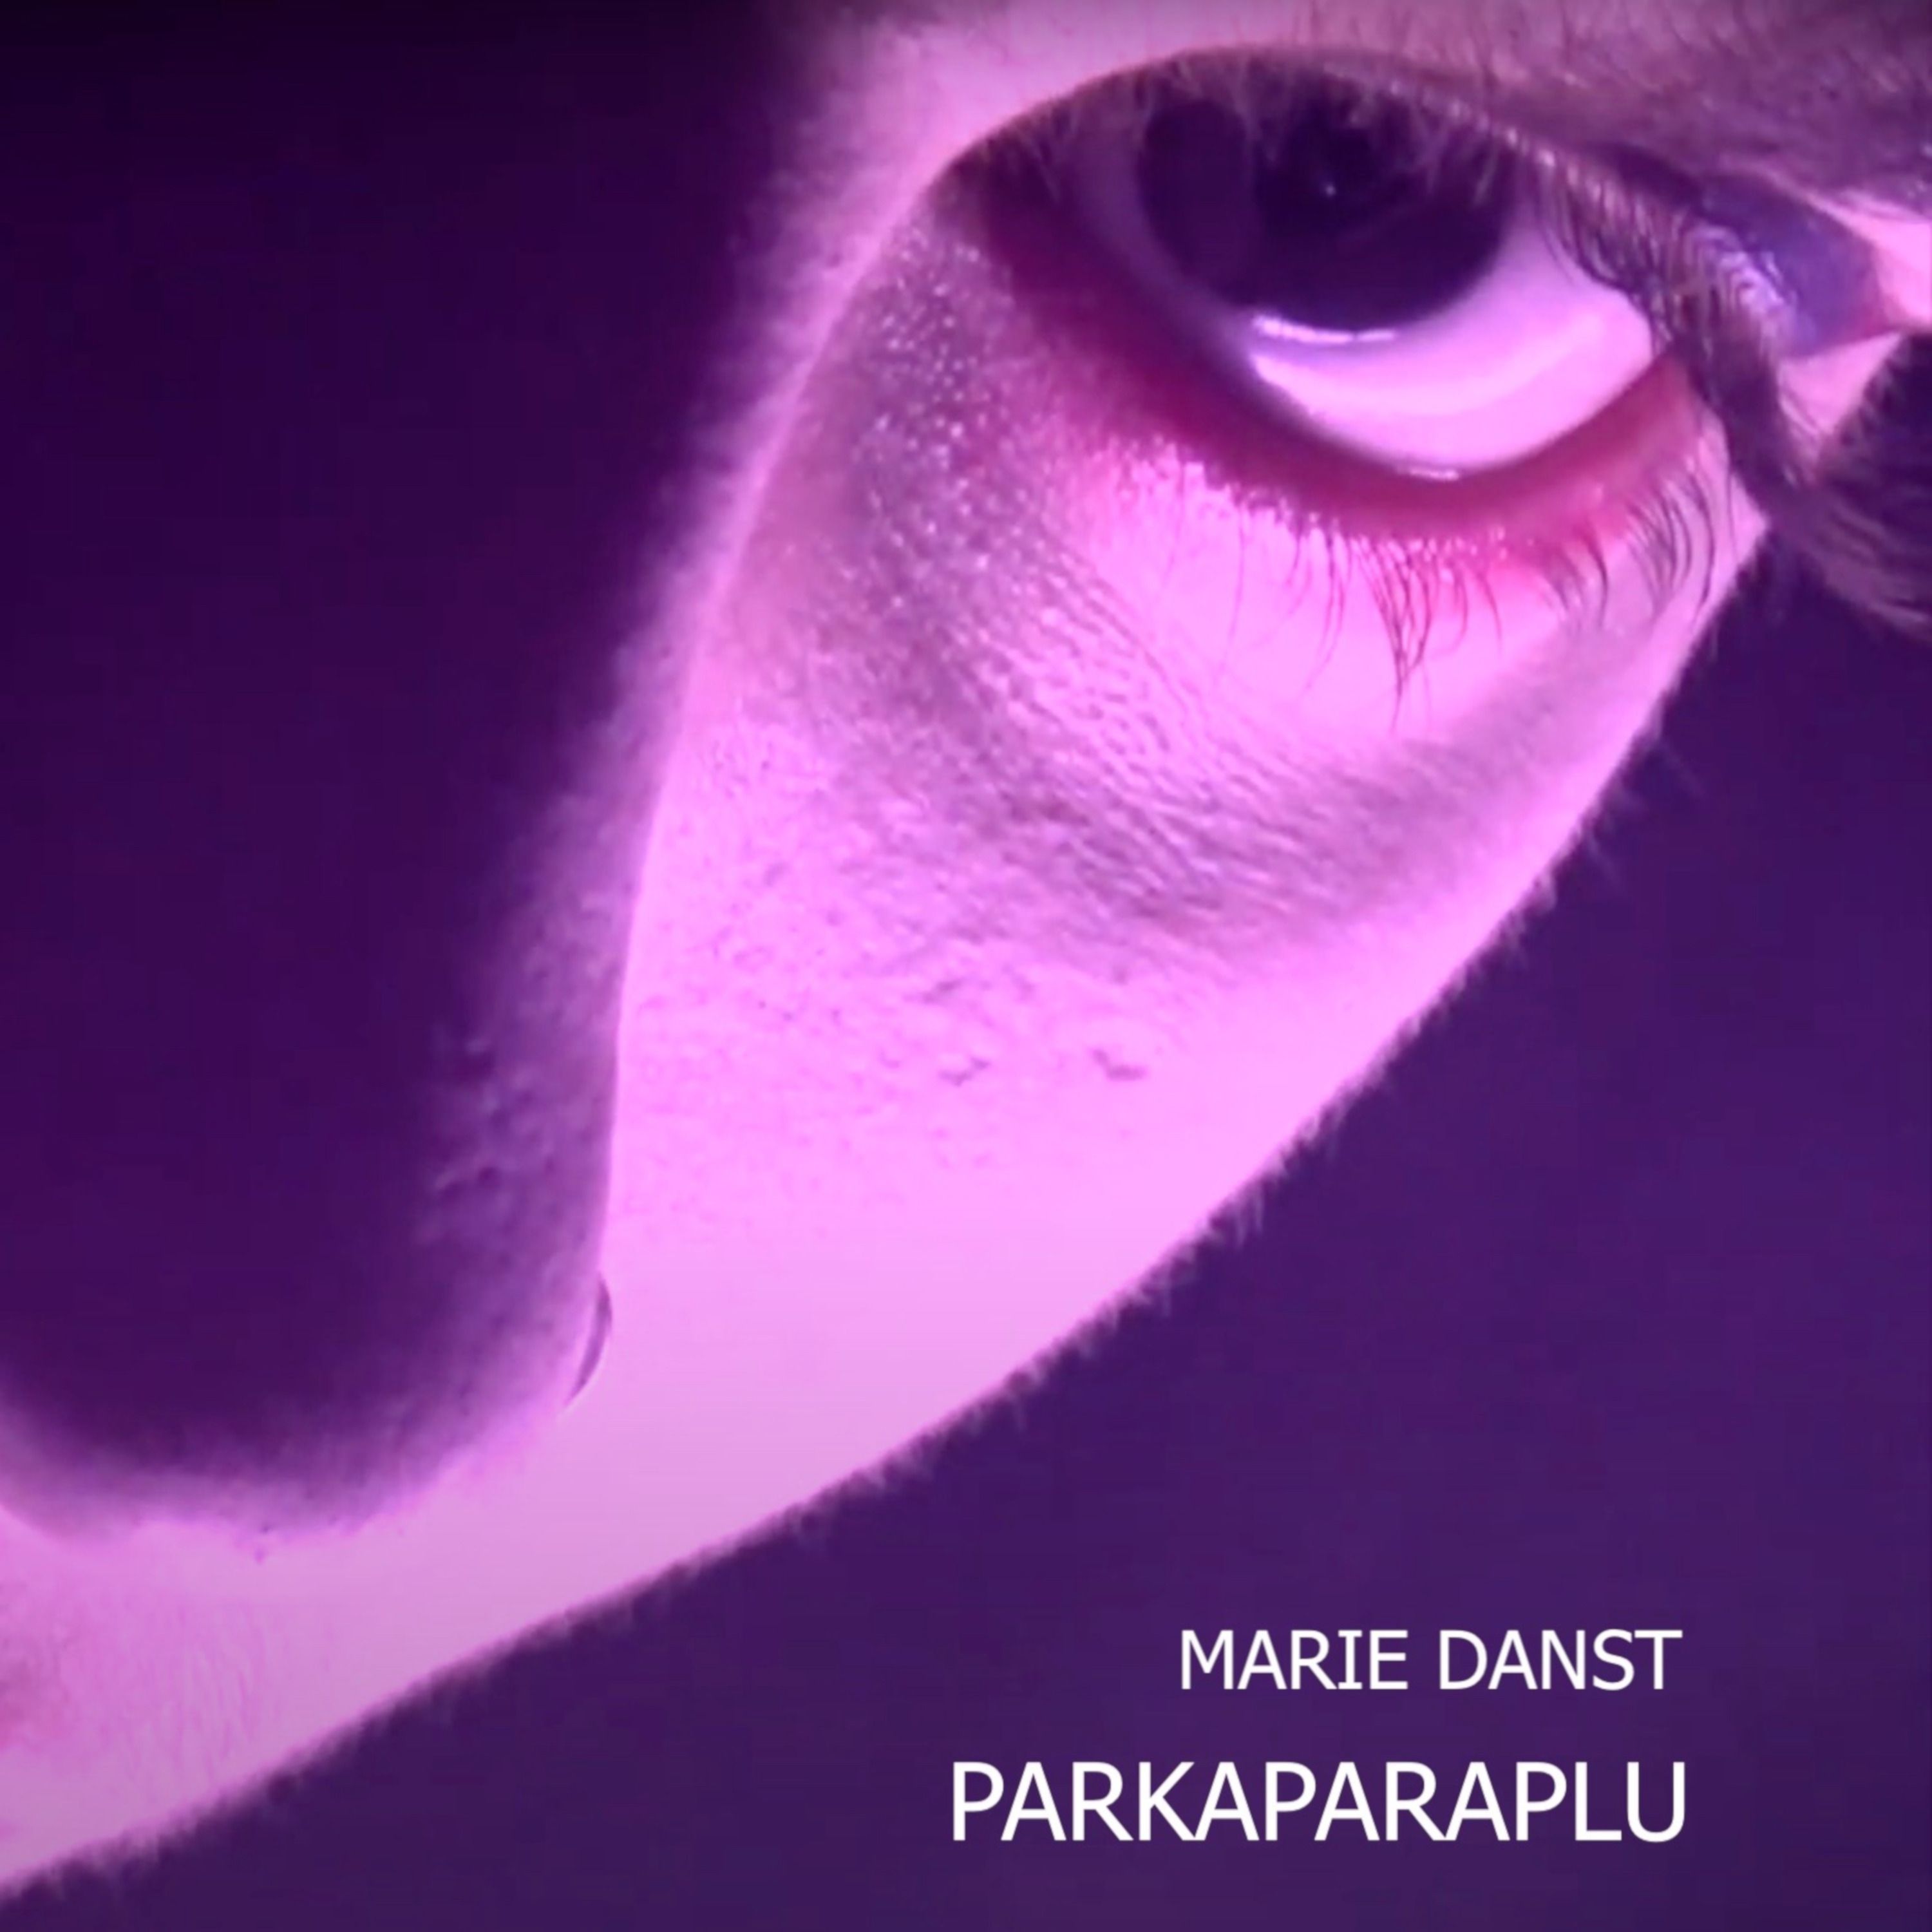 Parkaparaplu - Marie danst front cover